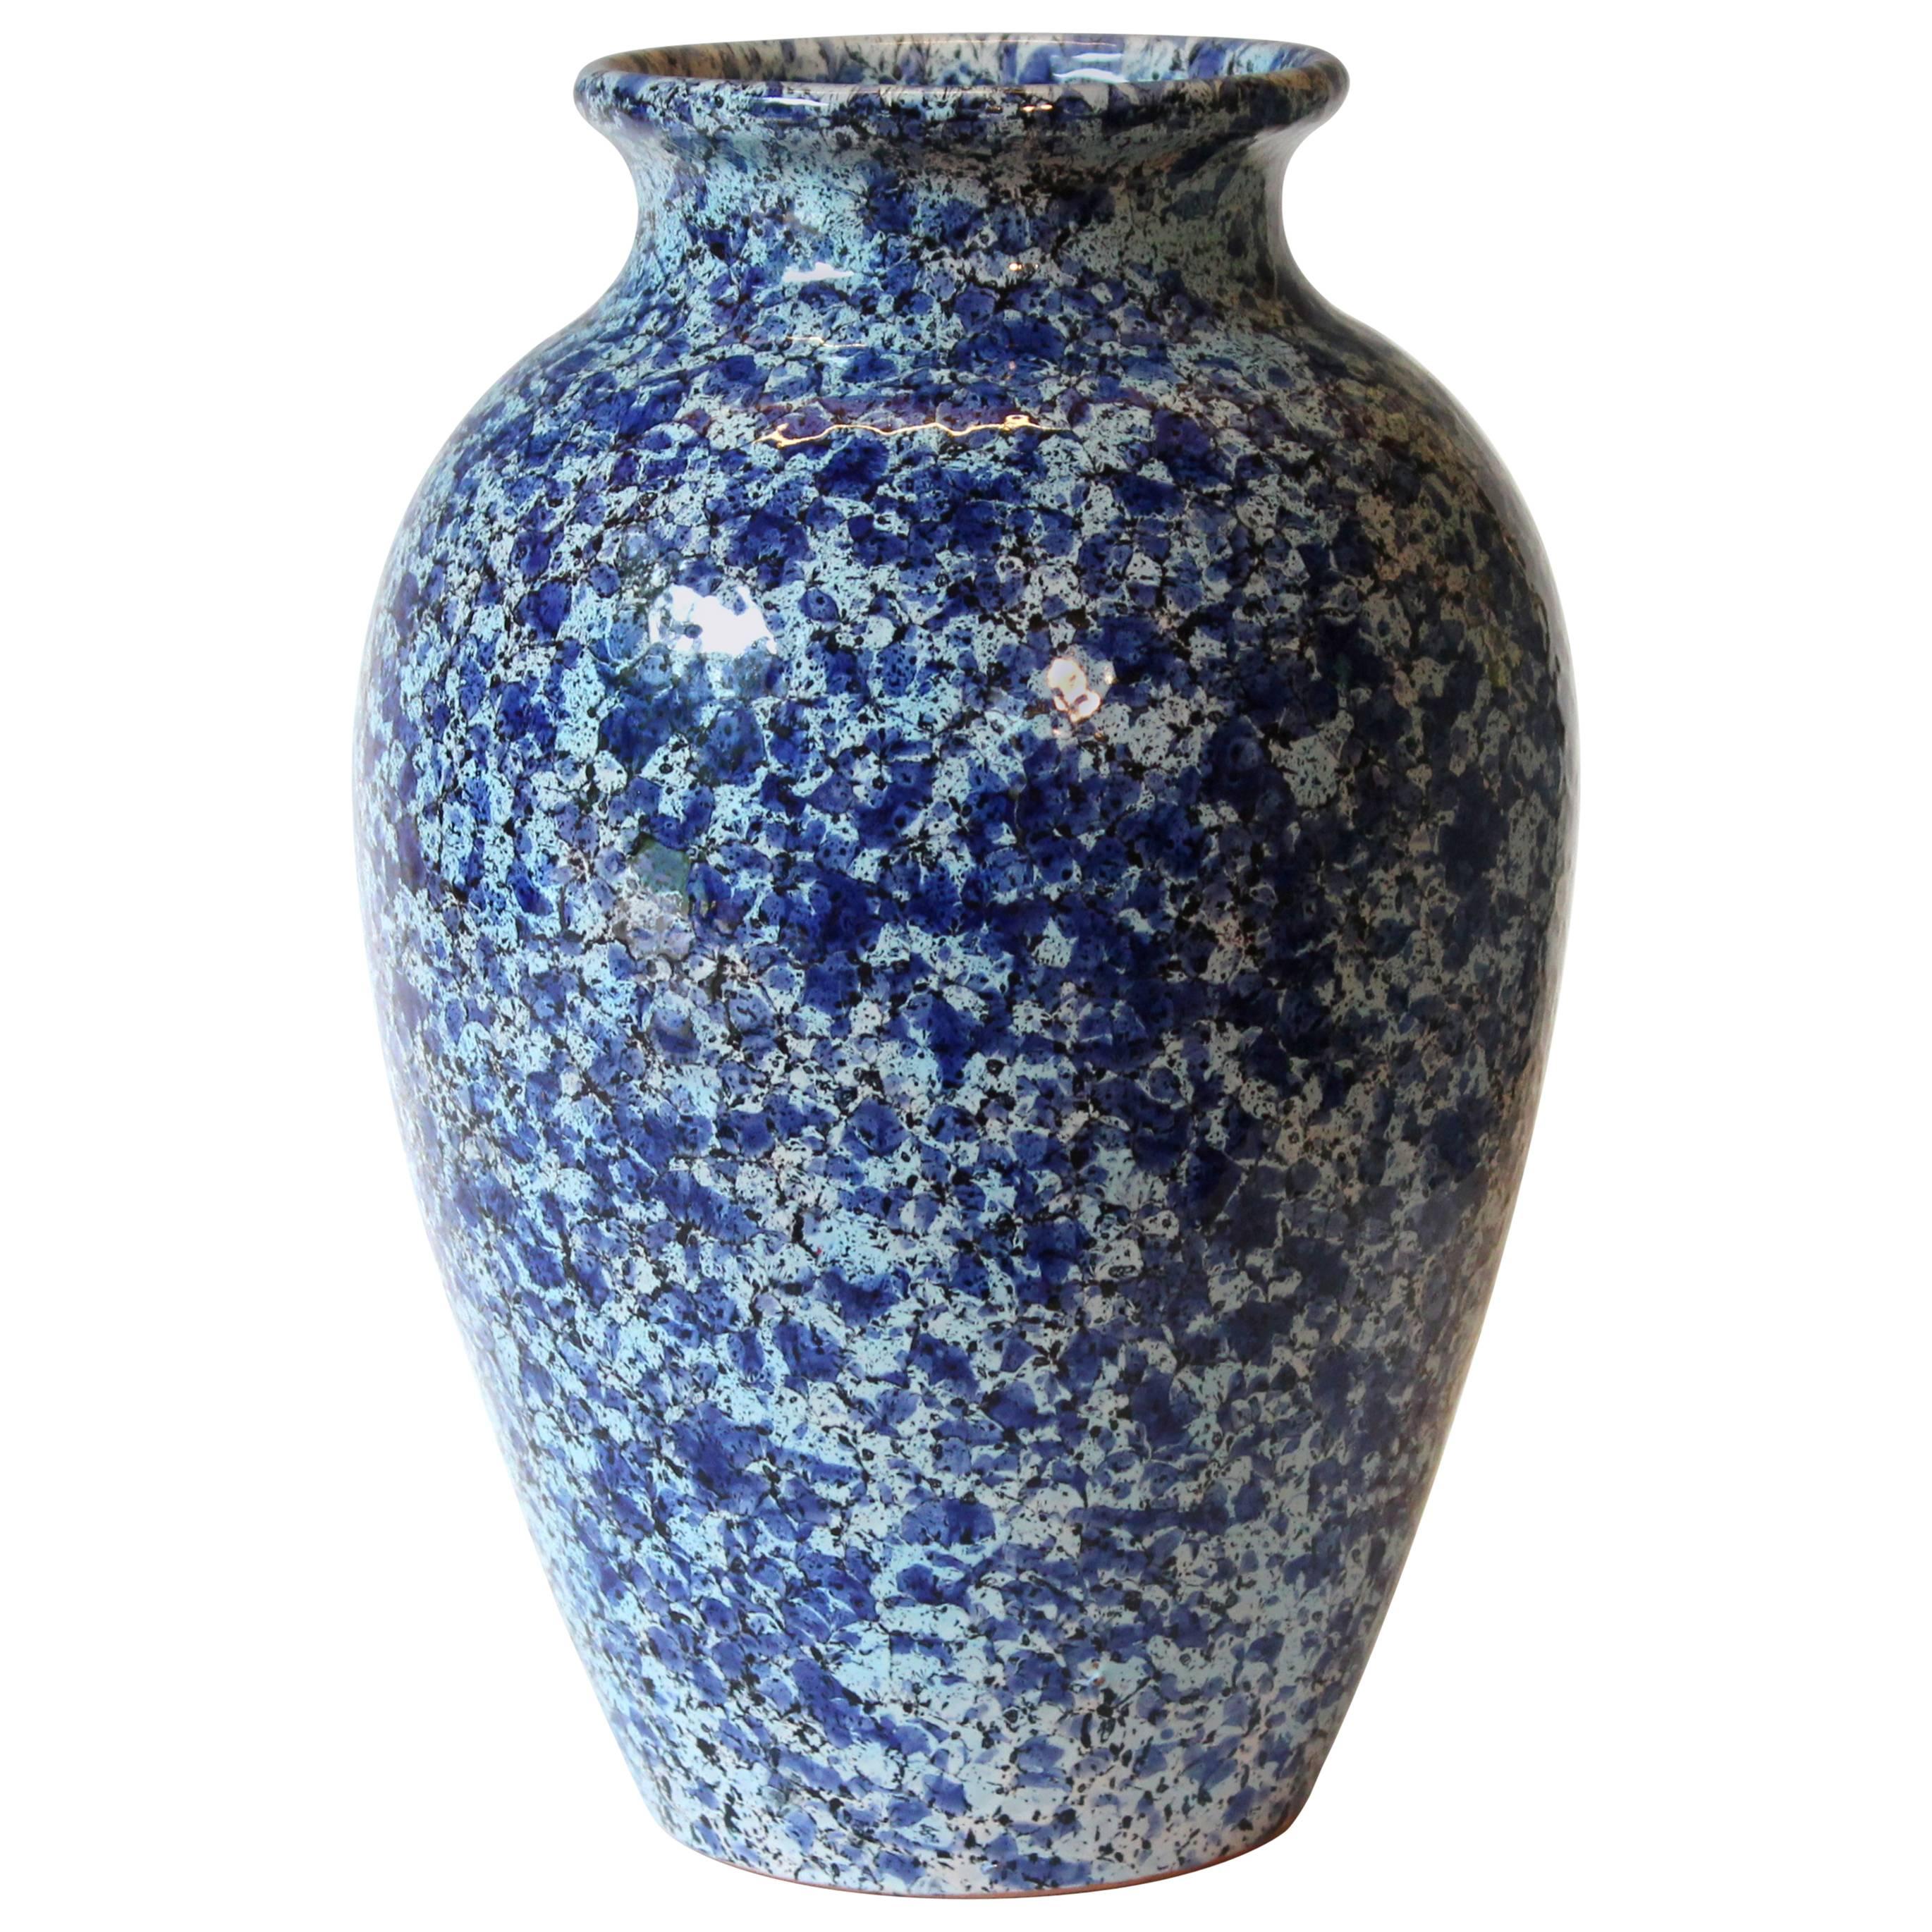 Vintage Italica Ars 1960s Italian Art Pottery Vase Mottled Blue and White Glaze For Sale